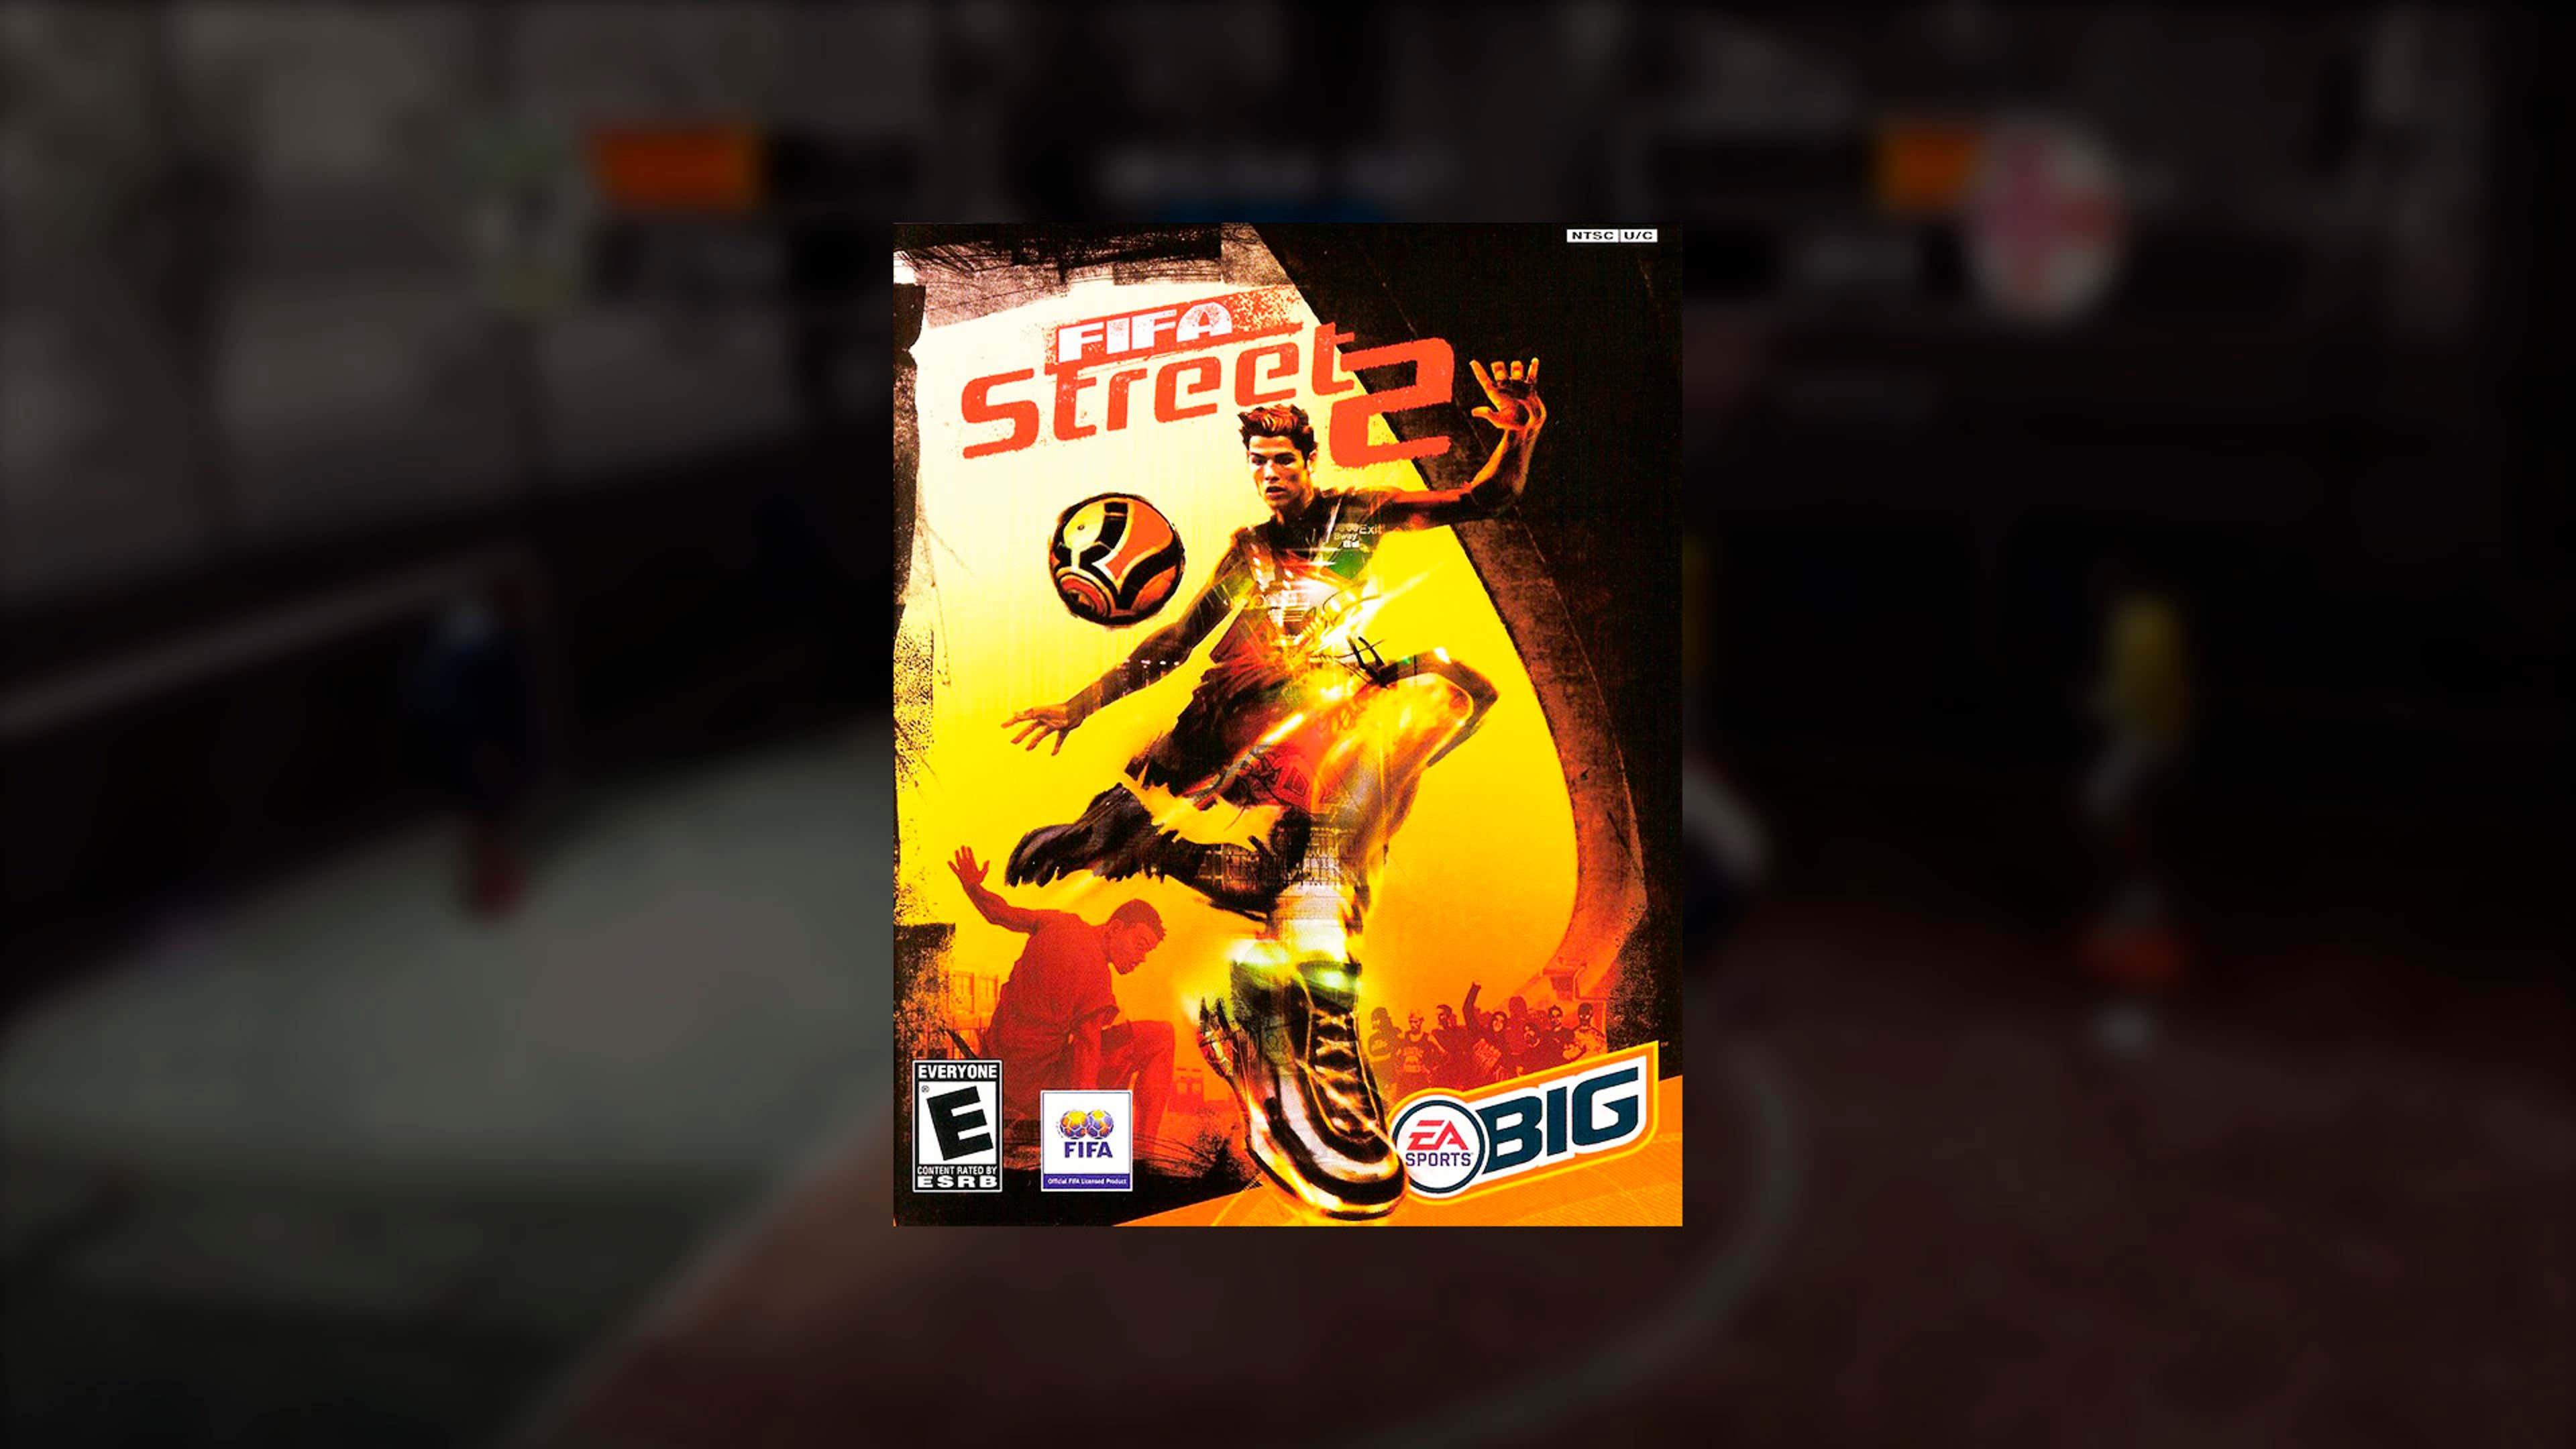 Jogos lançados pela EA Sports BIG